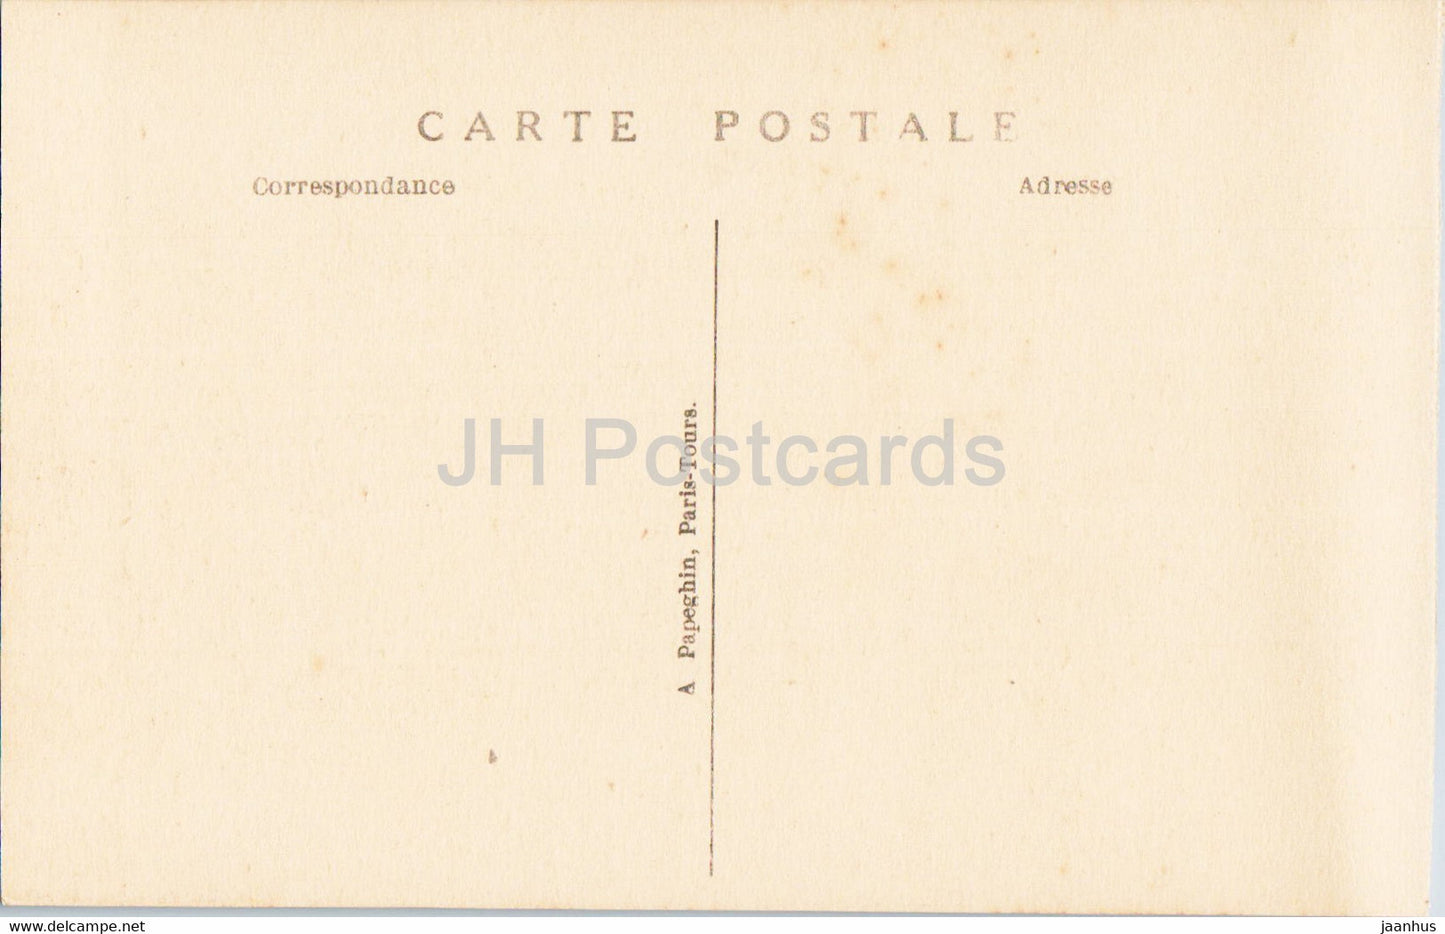 Versailles - Salon de reception du nouveau President - 135 - old postcard - France - unused